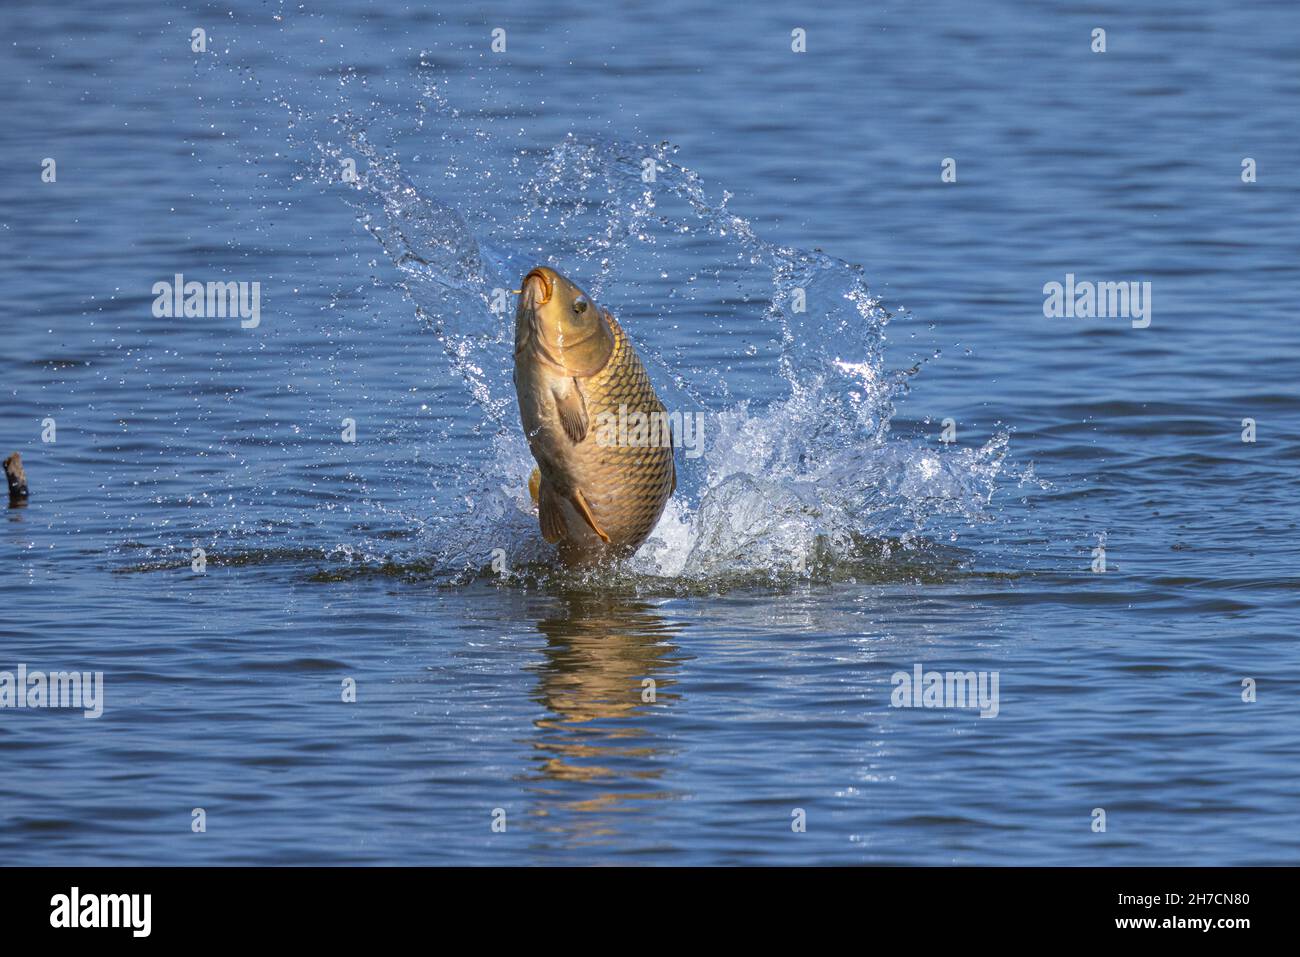 Carpa, carpa comune, carpa europea (Cyprinus carpio), salta fuori dall'acqua per sbarazzarsi dei pidocchi carpe, Germania, Baviera Foto Stock